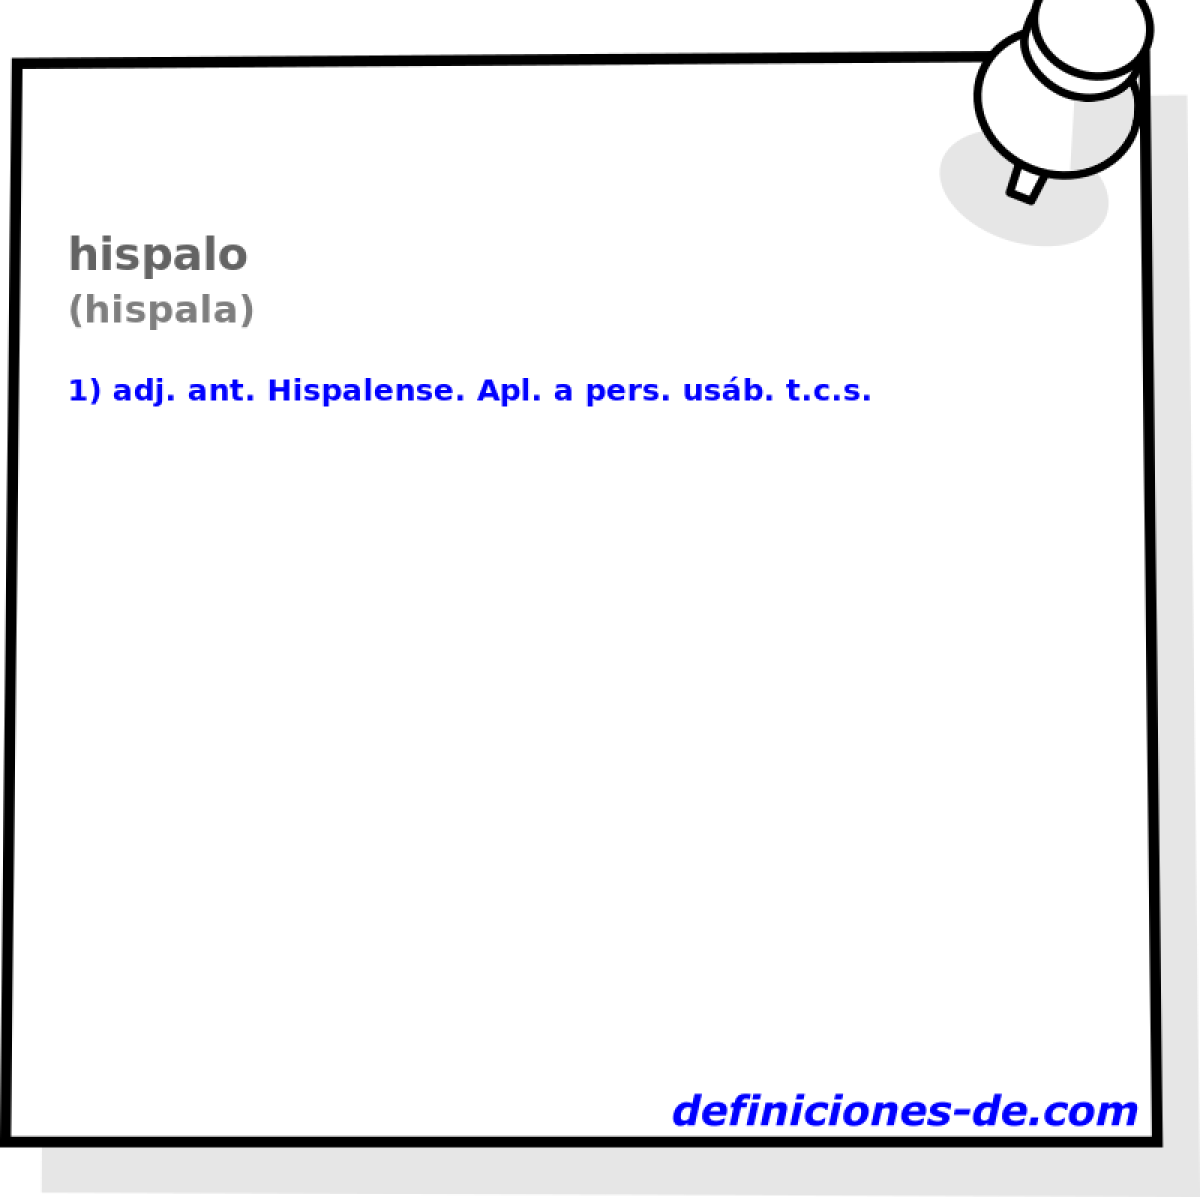 hispalo (hispala)